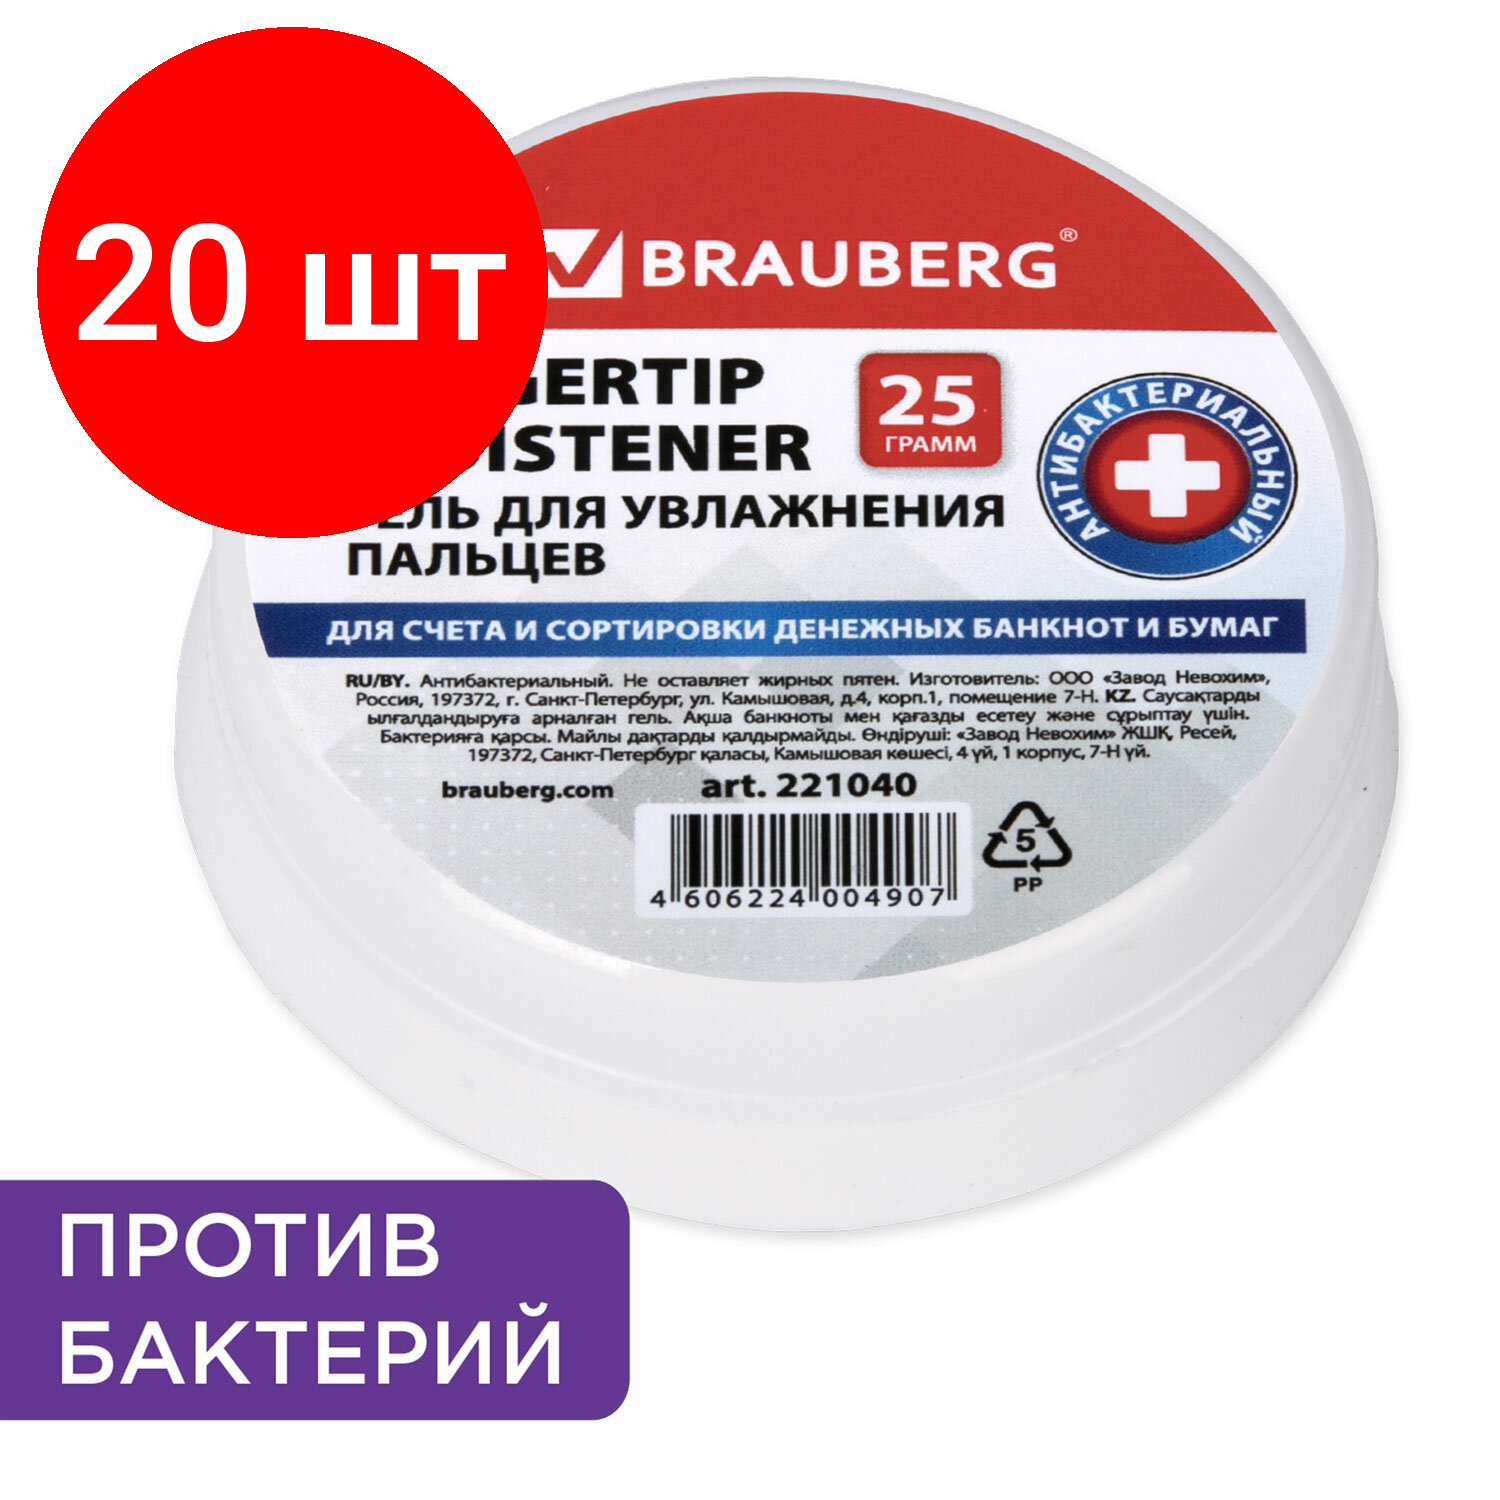 Комплект 20 шт, Гель для увлажнения пальцев антибактериальный BRAUBERG, 25 г, 221040